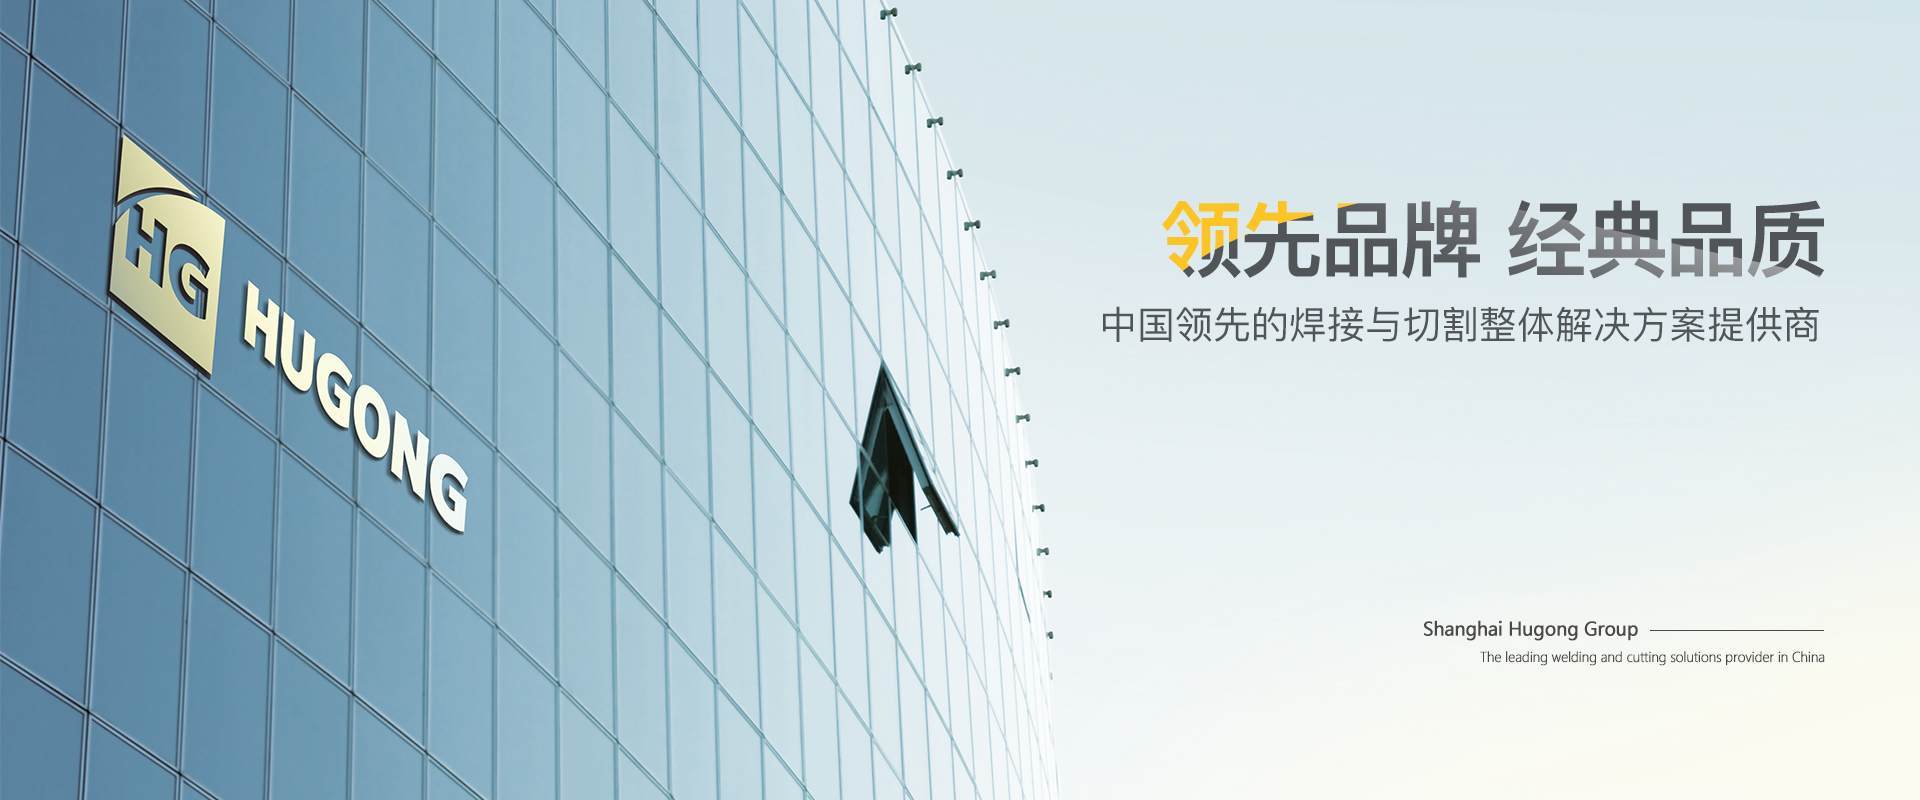 上海凯时KB88-中國領先的焊接與切割整體解決方案提供商